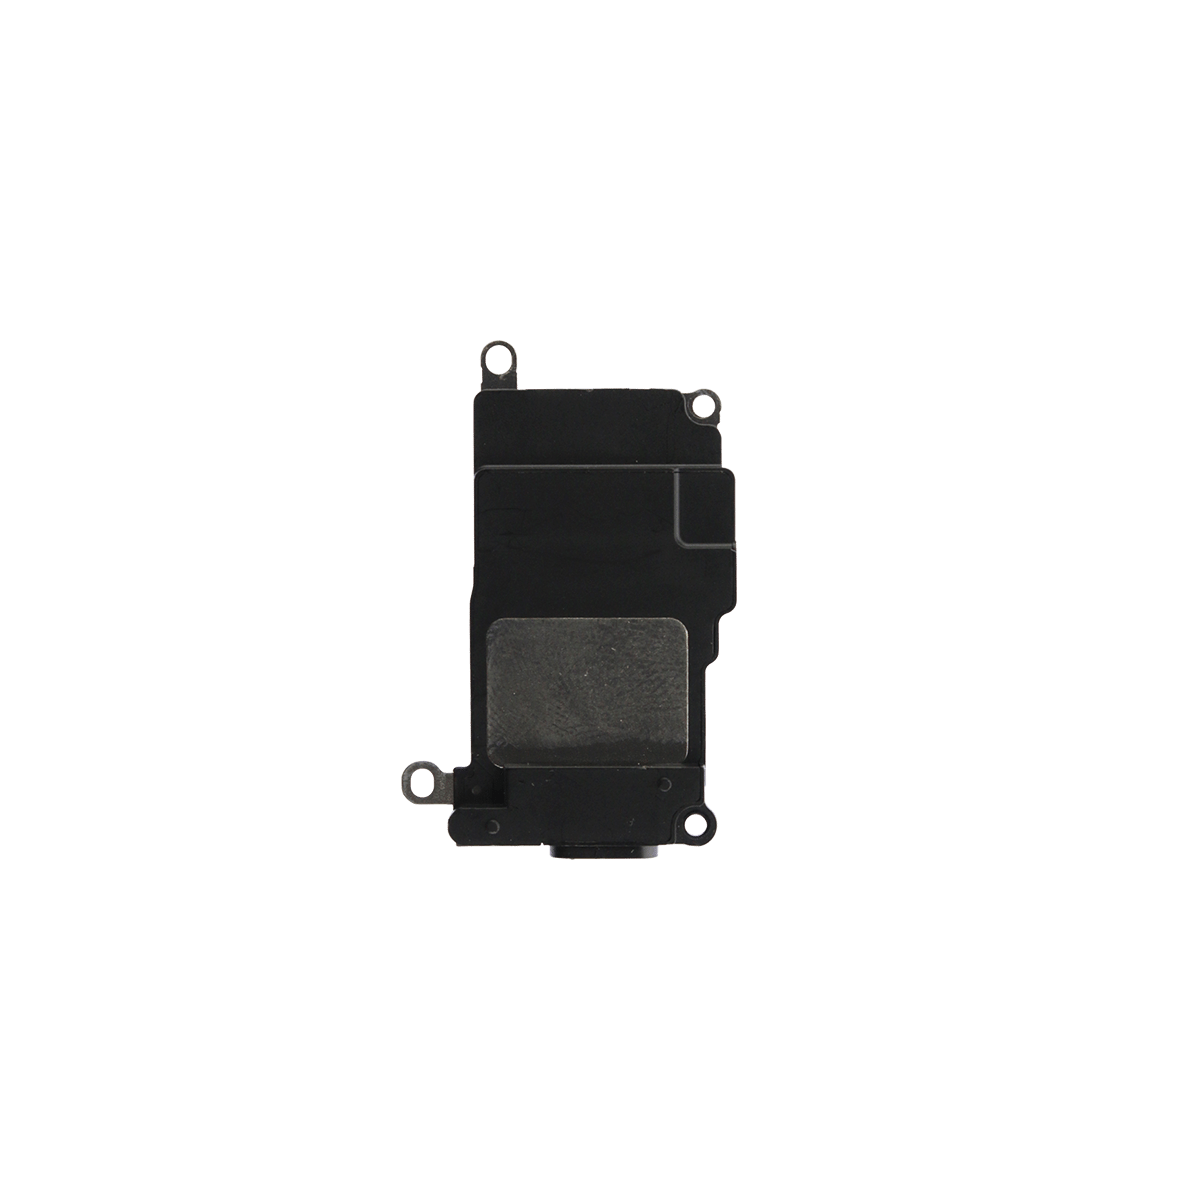 iPhone 8 / SE (2020) Loudspeaker Replacement